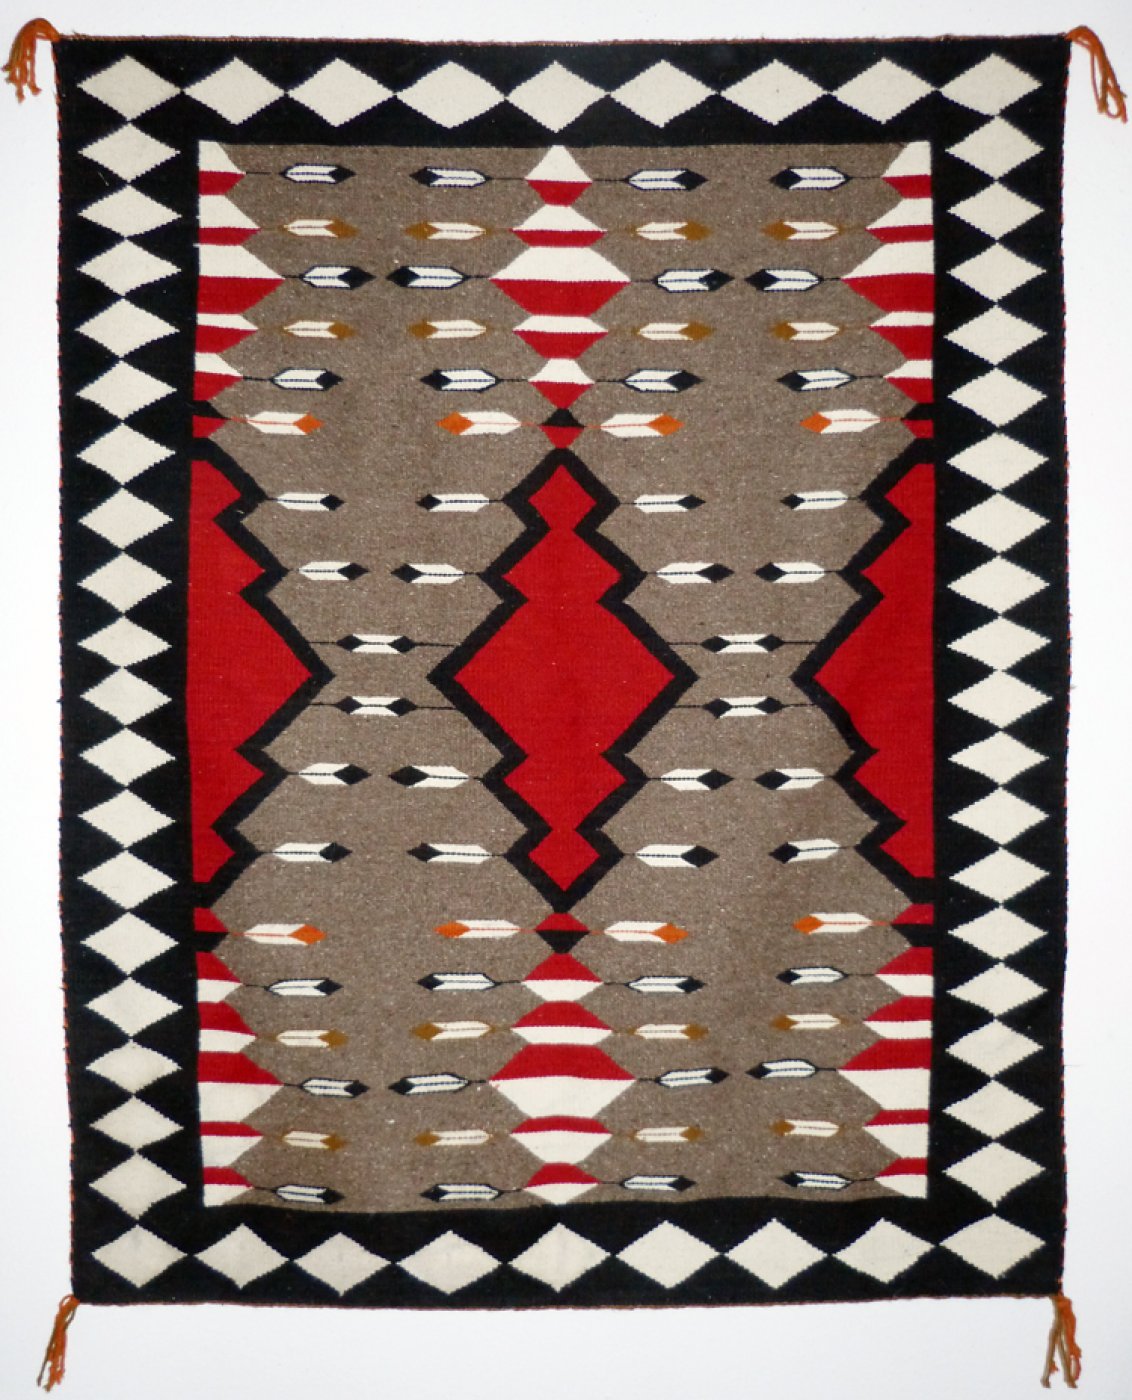 navajo-pictorial-rug-with-arrow-motifs-c-1950-shiprock-santa-fe